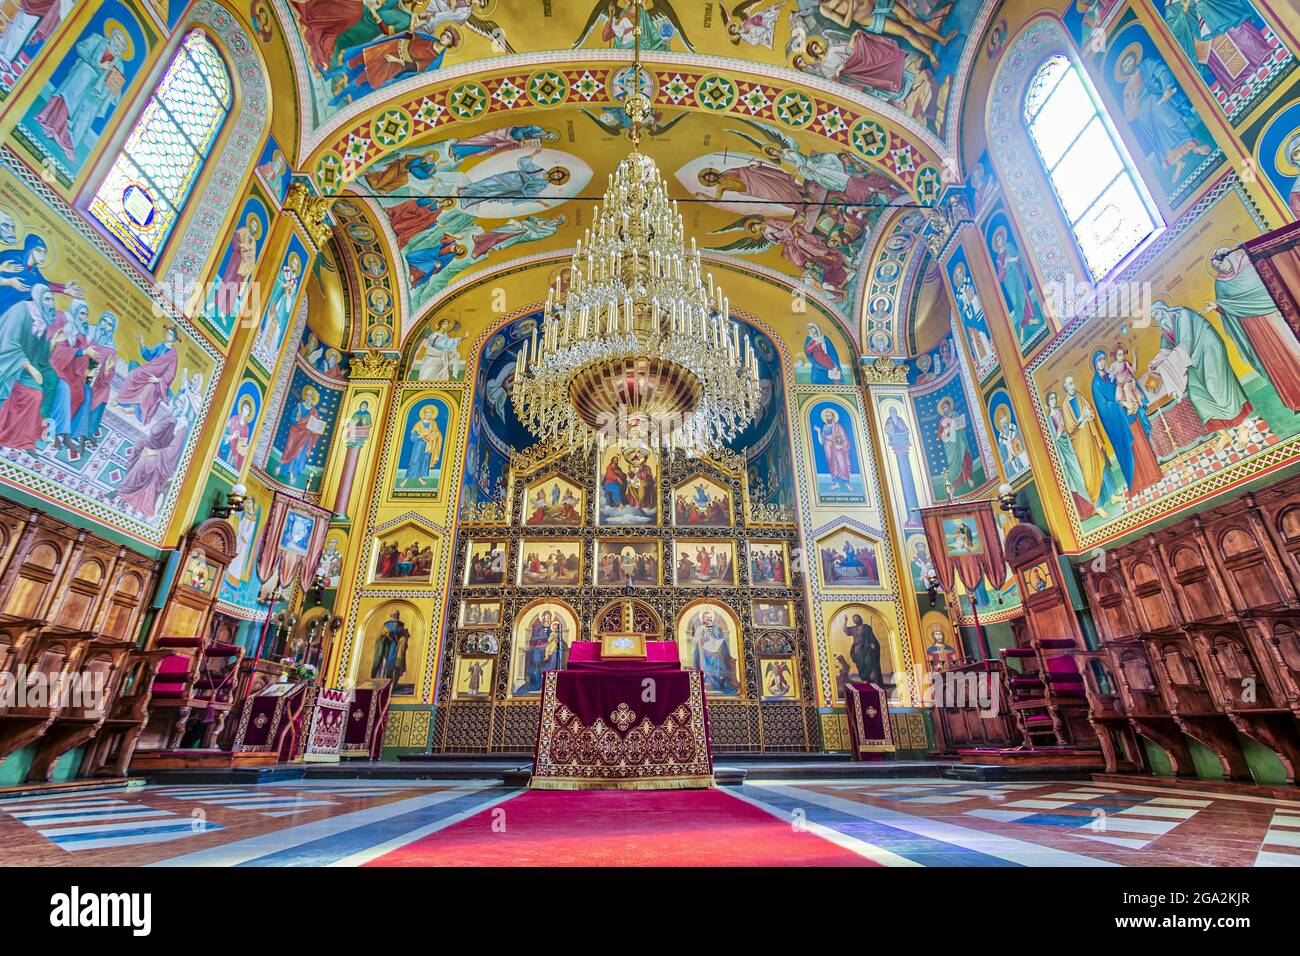 Magnifique intérieur du XIXe siècle, la cathédrale orthodoxe de Zagreb avec son grand lustre suspendu au-dessus de l'autel et sa fresque colorée... Banque D'Images